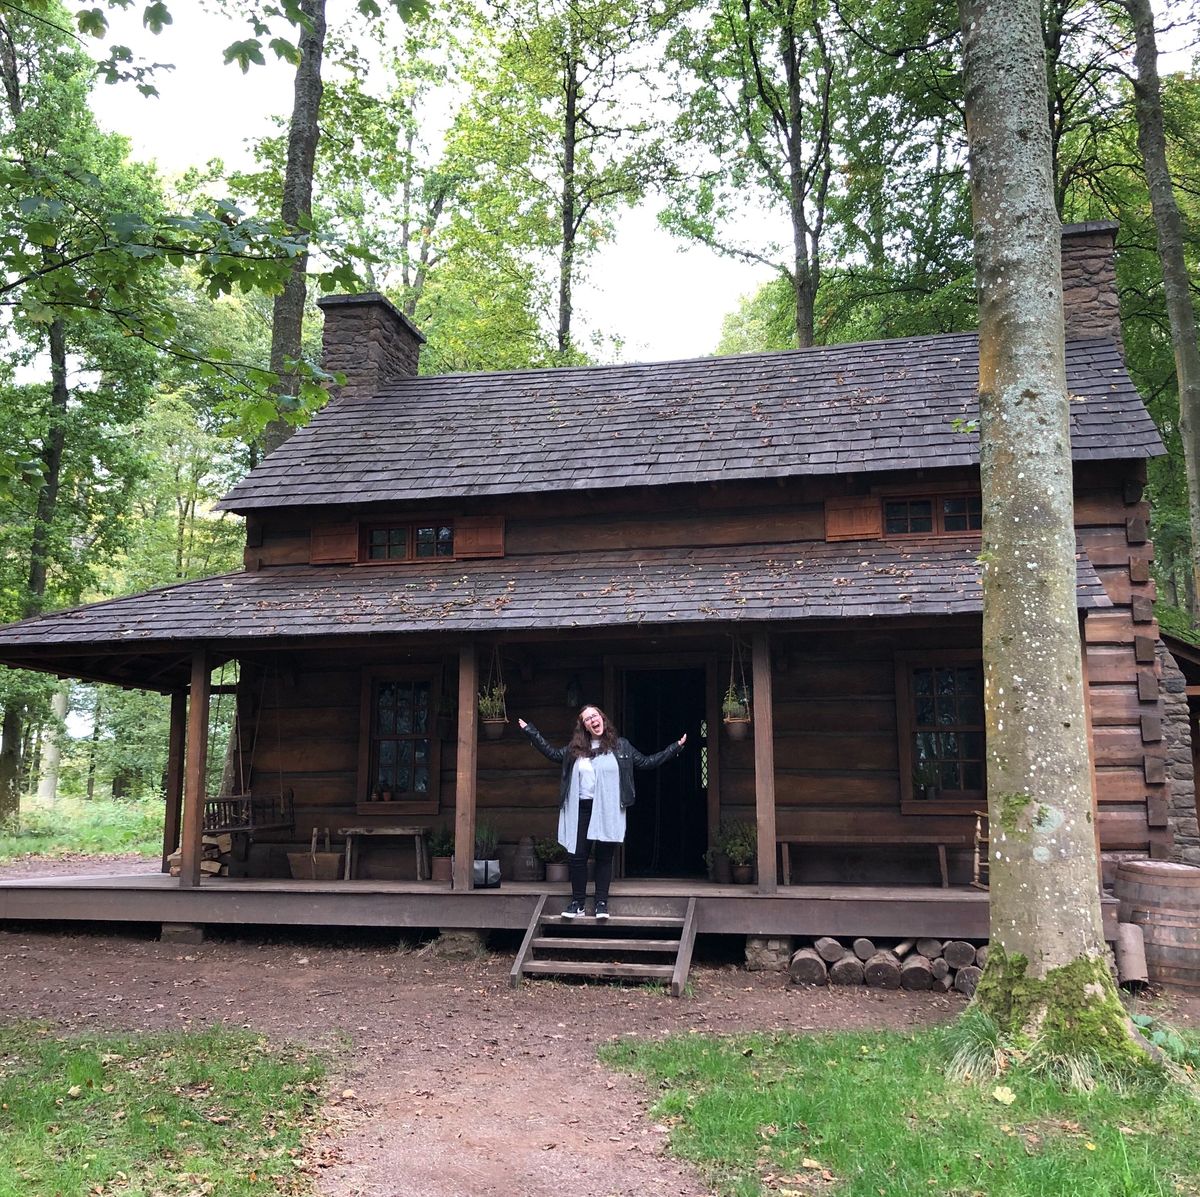 Log cabin, Shack, Cottage, House, Building, Tree, State park, Hut, Forest, Landscape, 